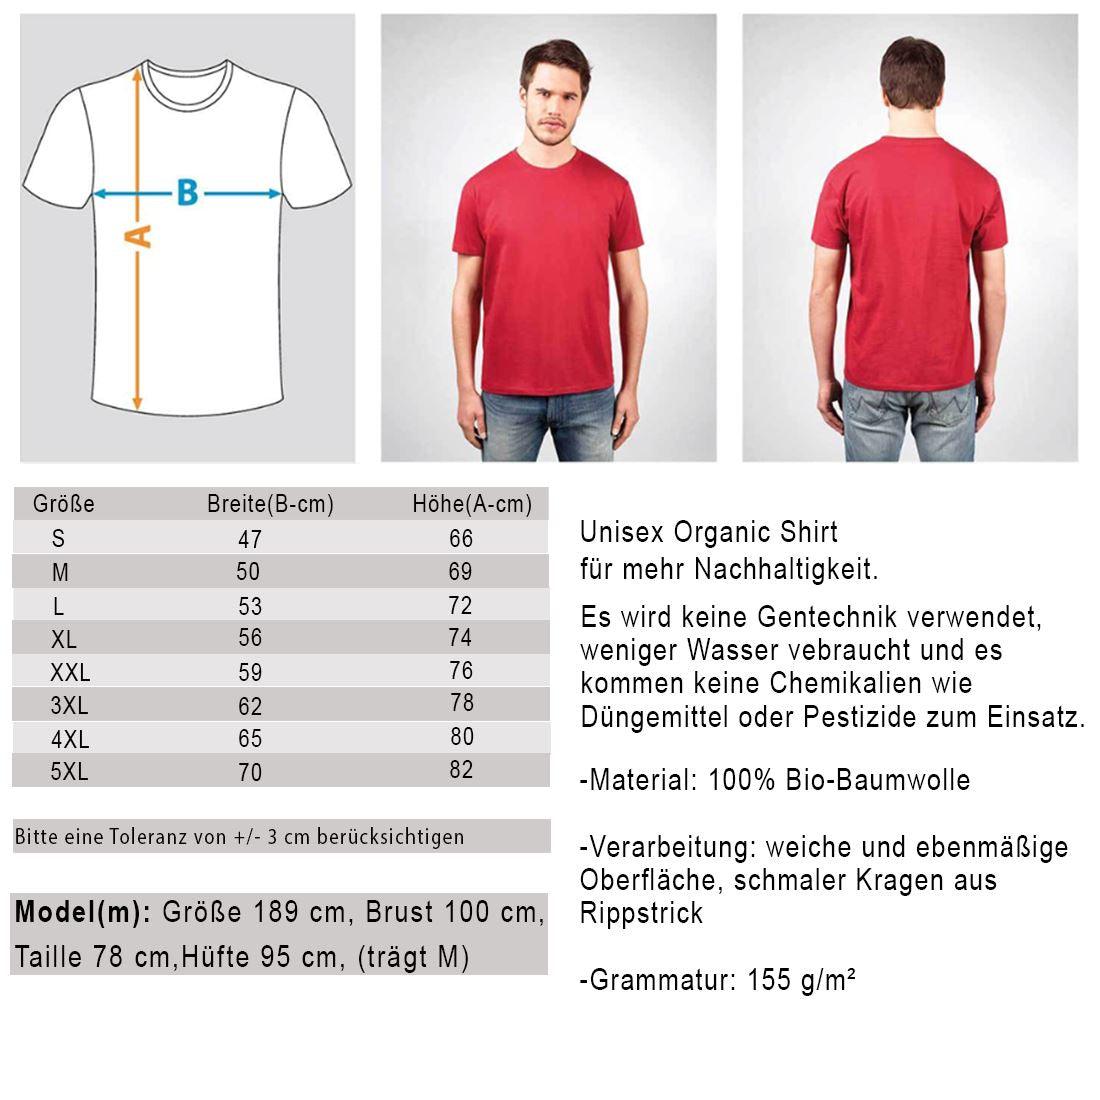 Lasst die Sau raus - Unisex Organic Shirt - Team Vegan © vegan t shirt